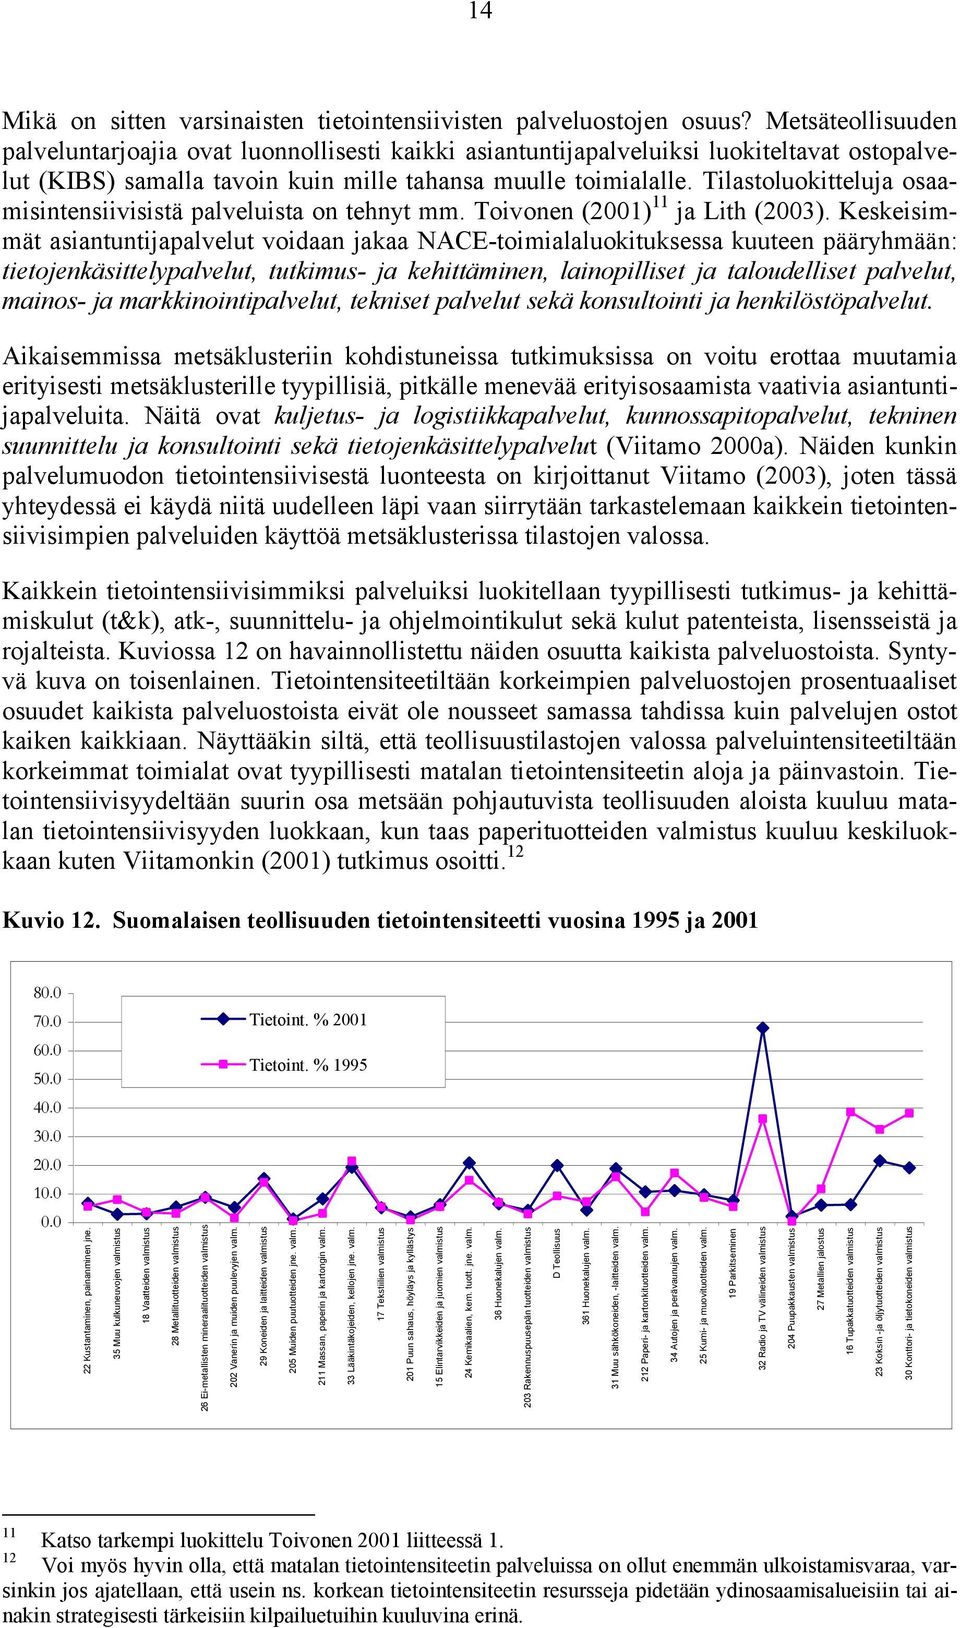 Tilastoluokitteluja osaamisintensiivisistä palveluista on tehnyt mm. Toivonen (2001) 11 ja Lith (2003).